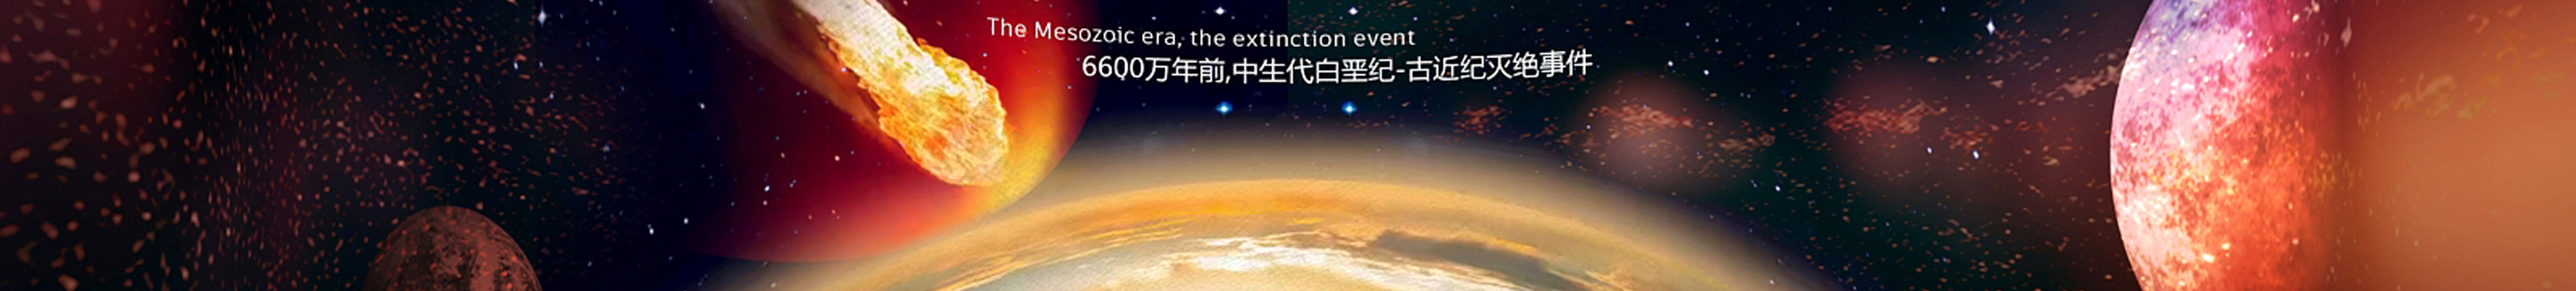 立威 李's profile banner